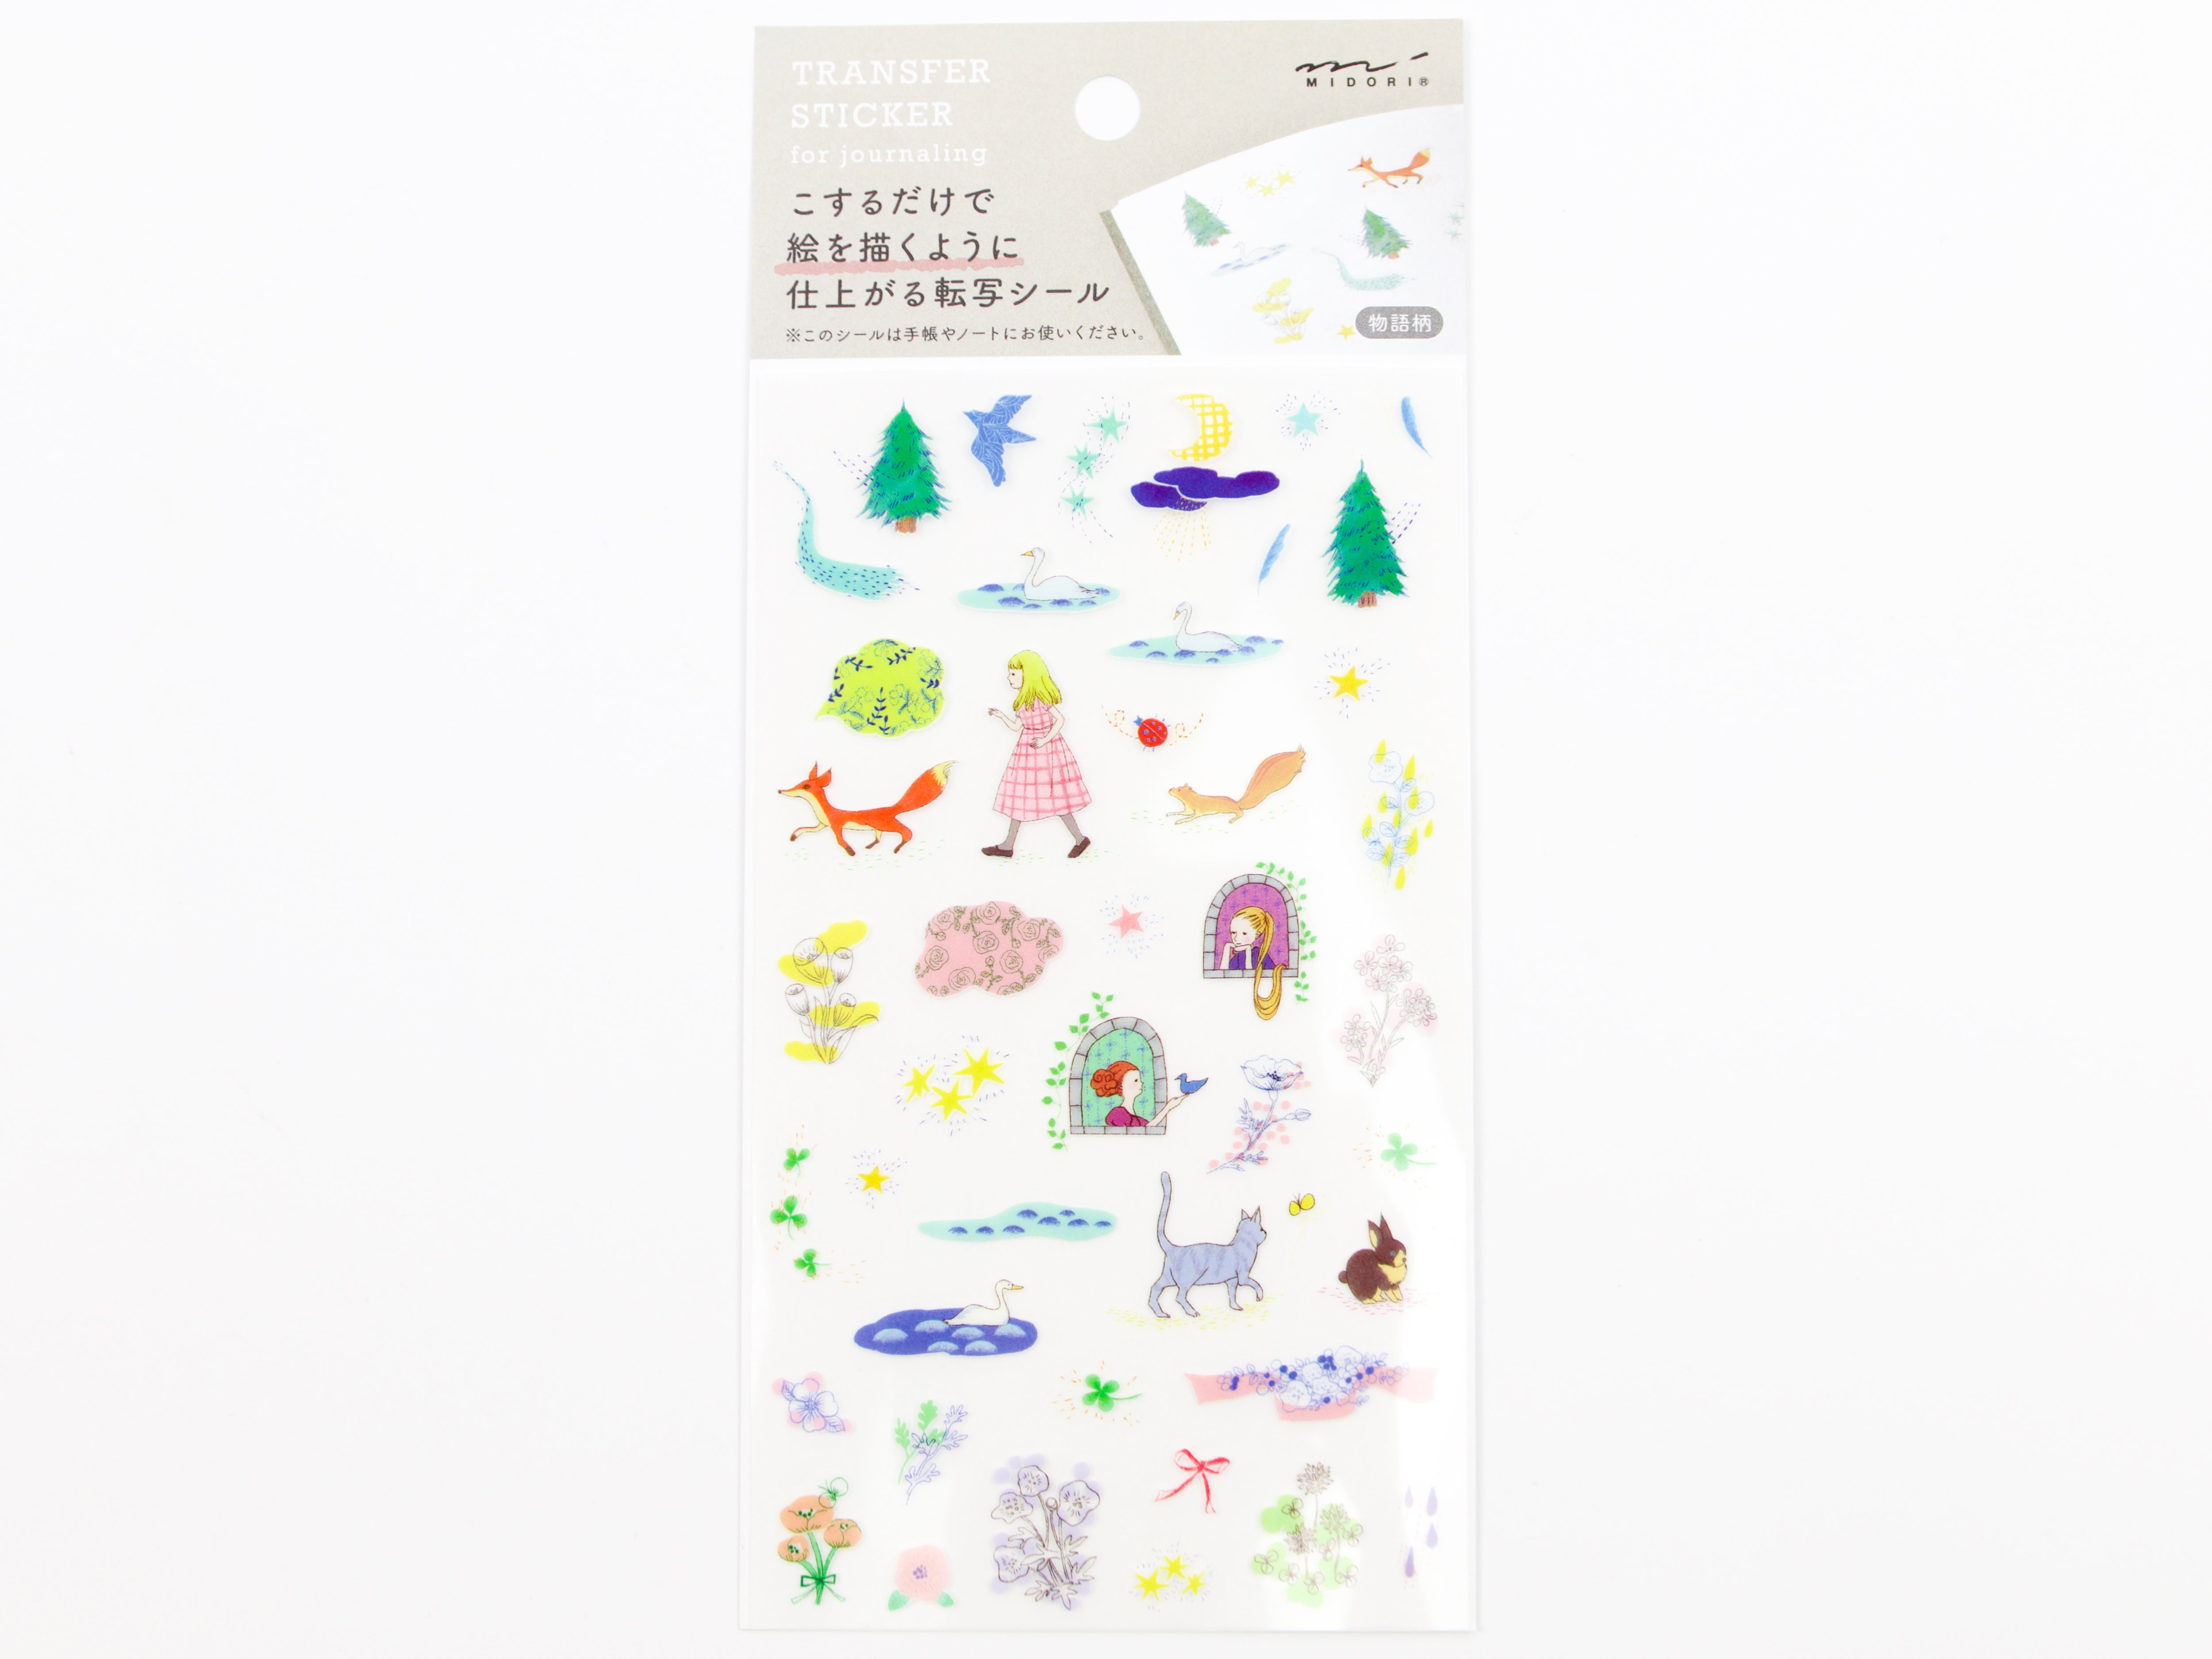 Midori Transfer Sticker - Wreath